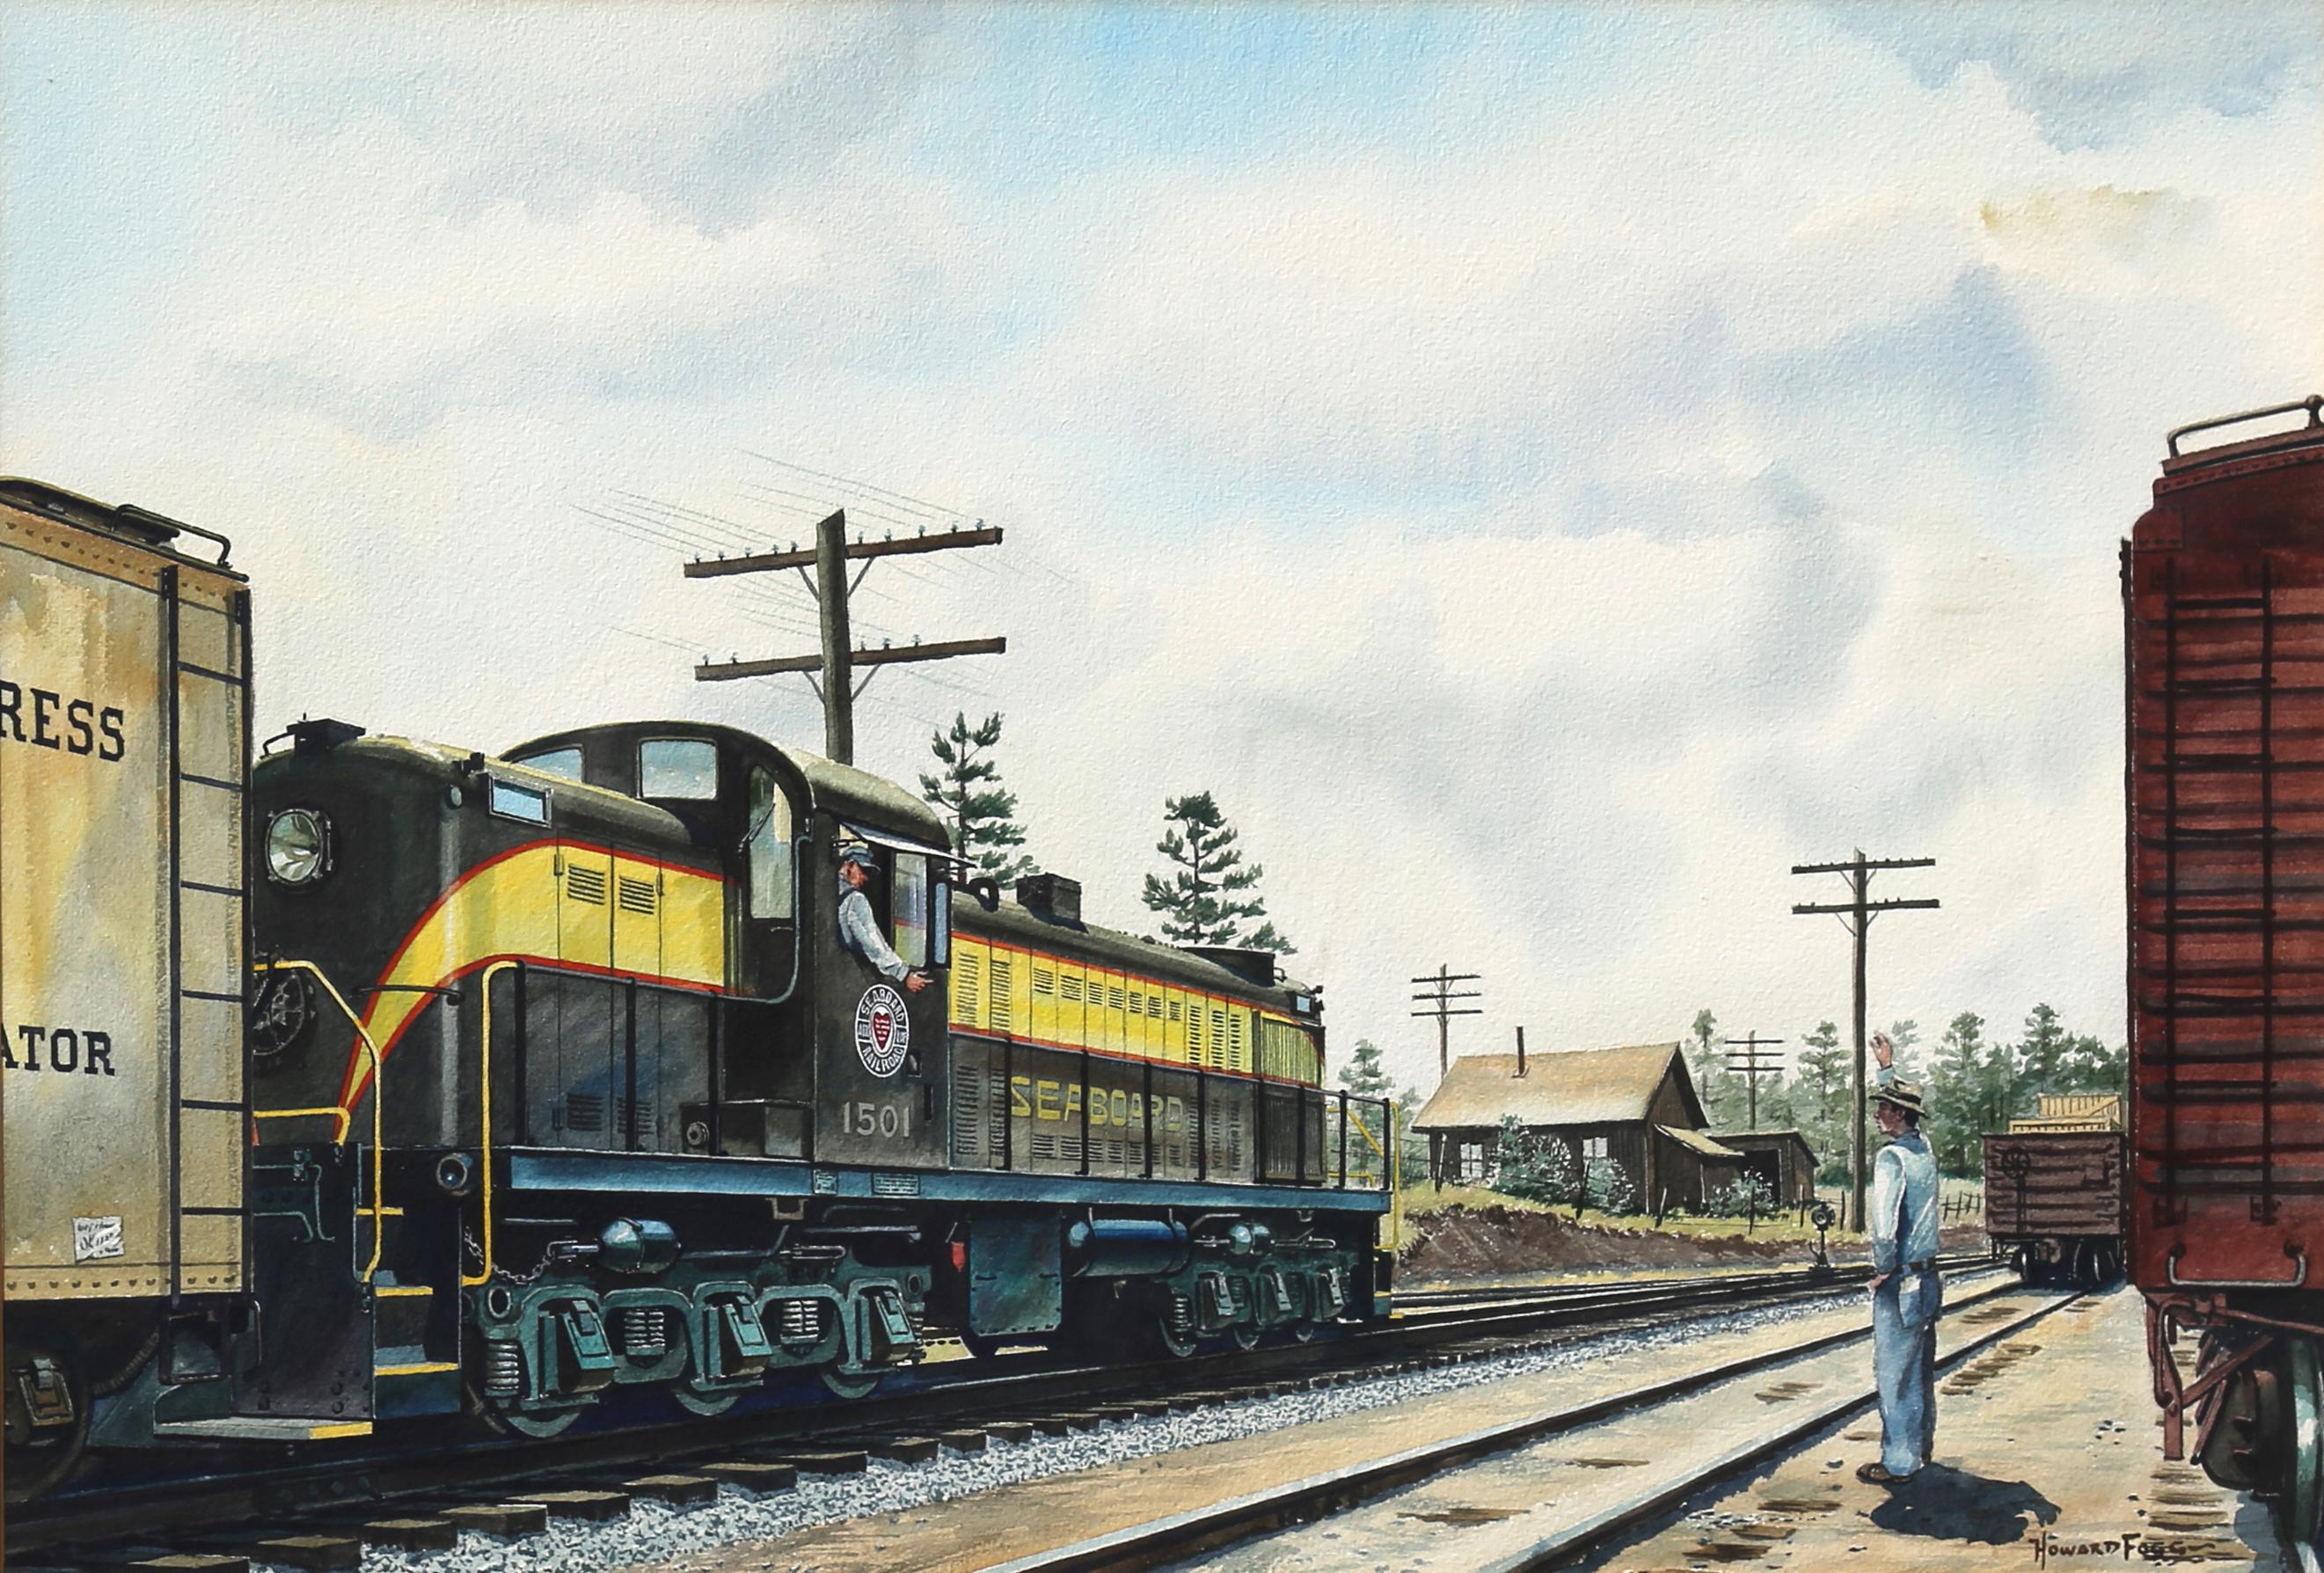 Howard Fogg Landscape Art - "Seaboard Railroad" Diesel Locomotive